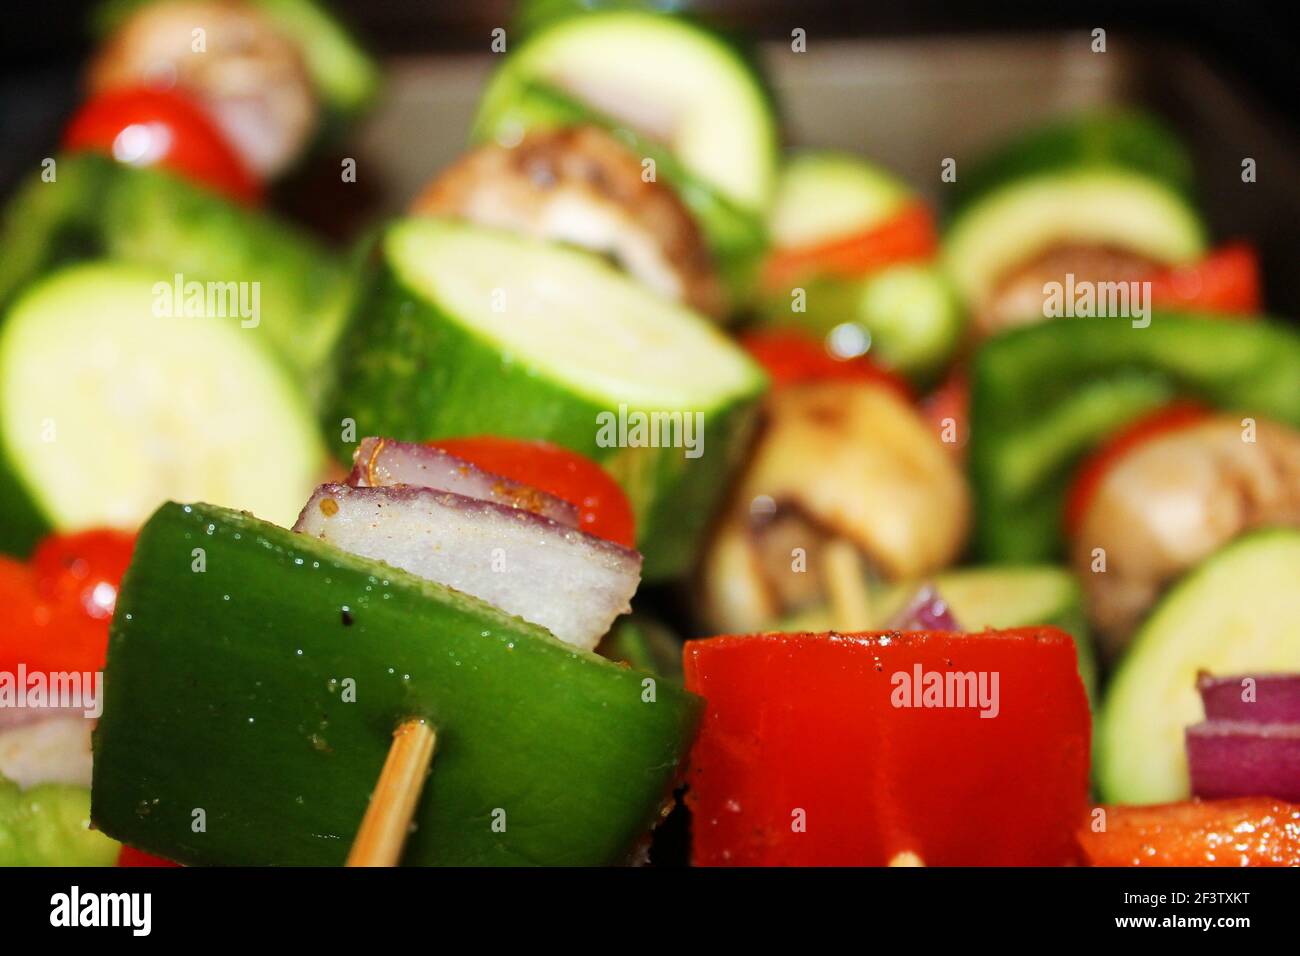 Nahaufnahme von rohen Gemüsespießen, mit grünem Pfeffer, rotem Pfeffer, Zucchini, Pilzen, Rote Zwiebel, Kirschtomate und Gewürze. Stockfoto